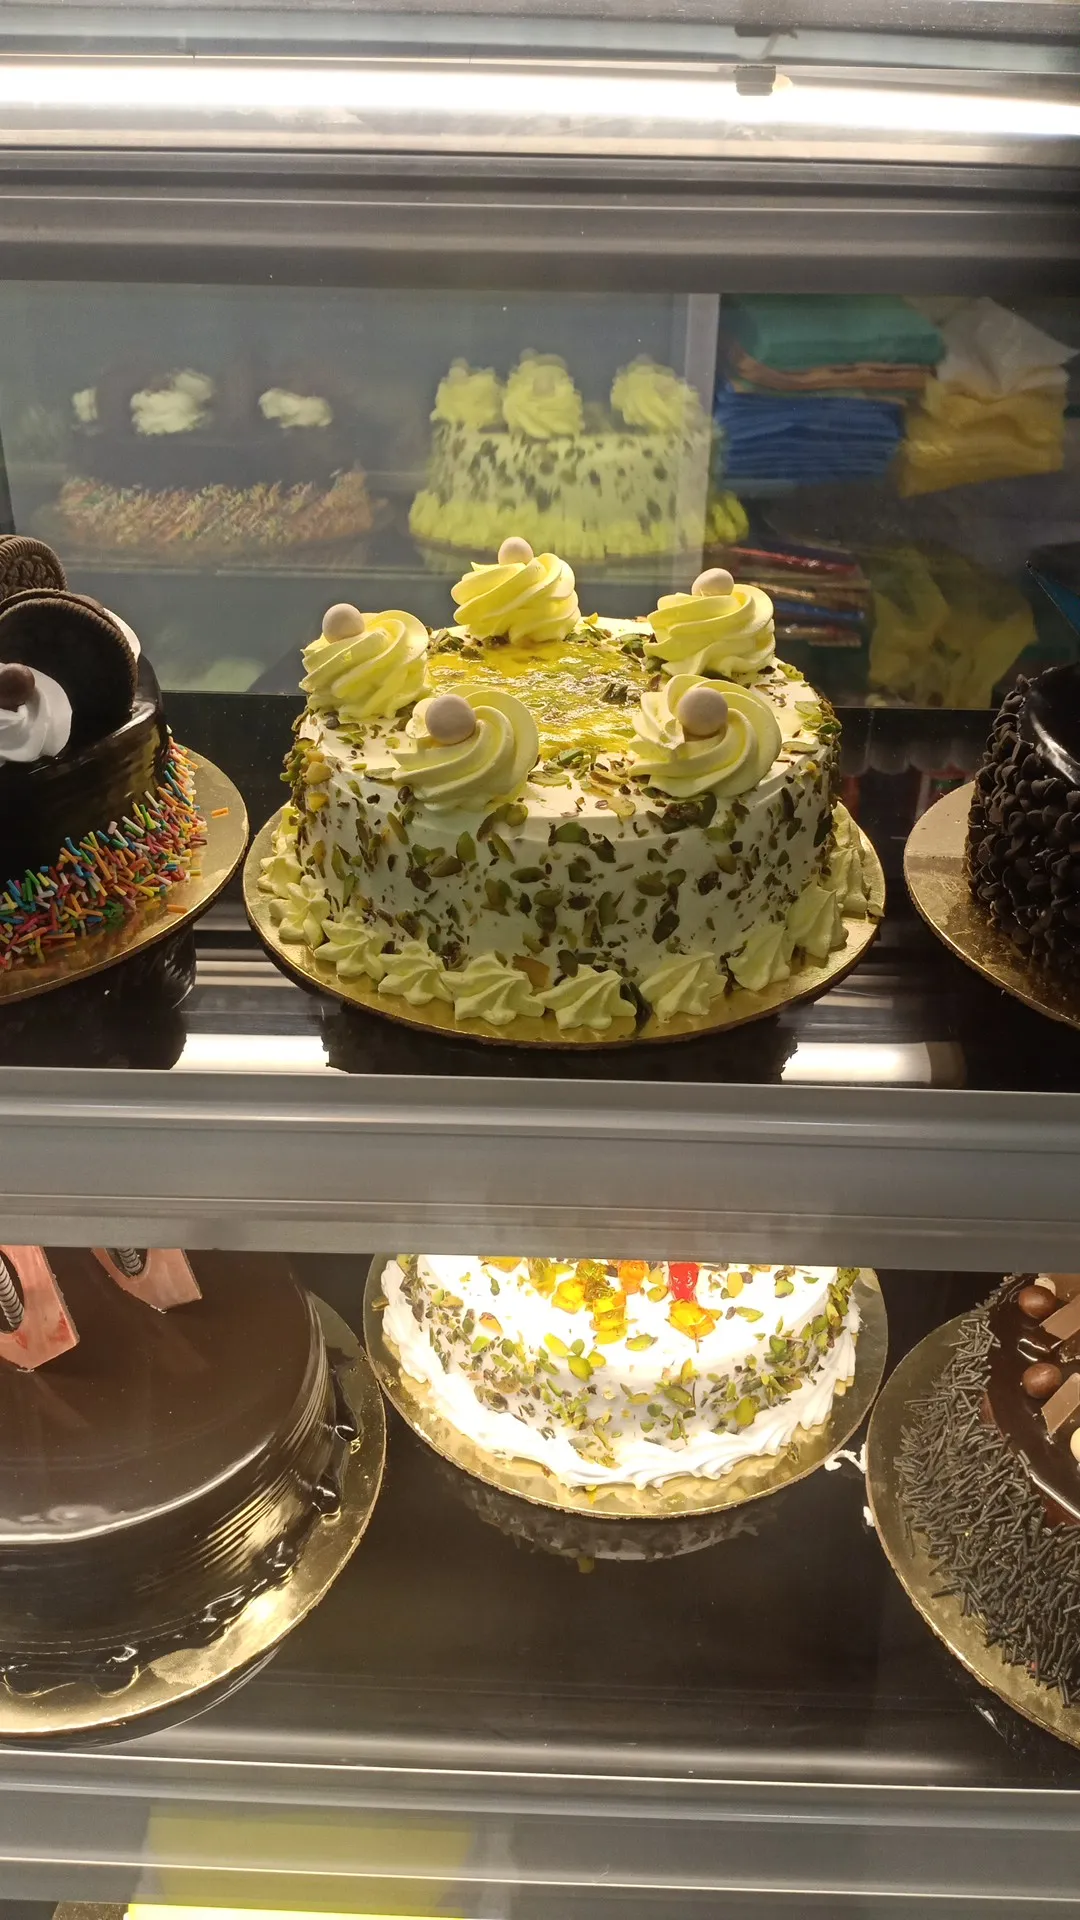 Cakes & More, Indore - Restaurant reviews